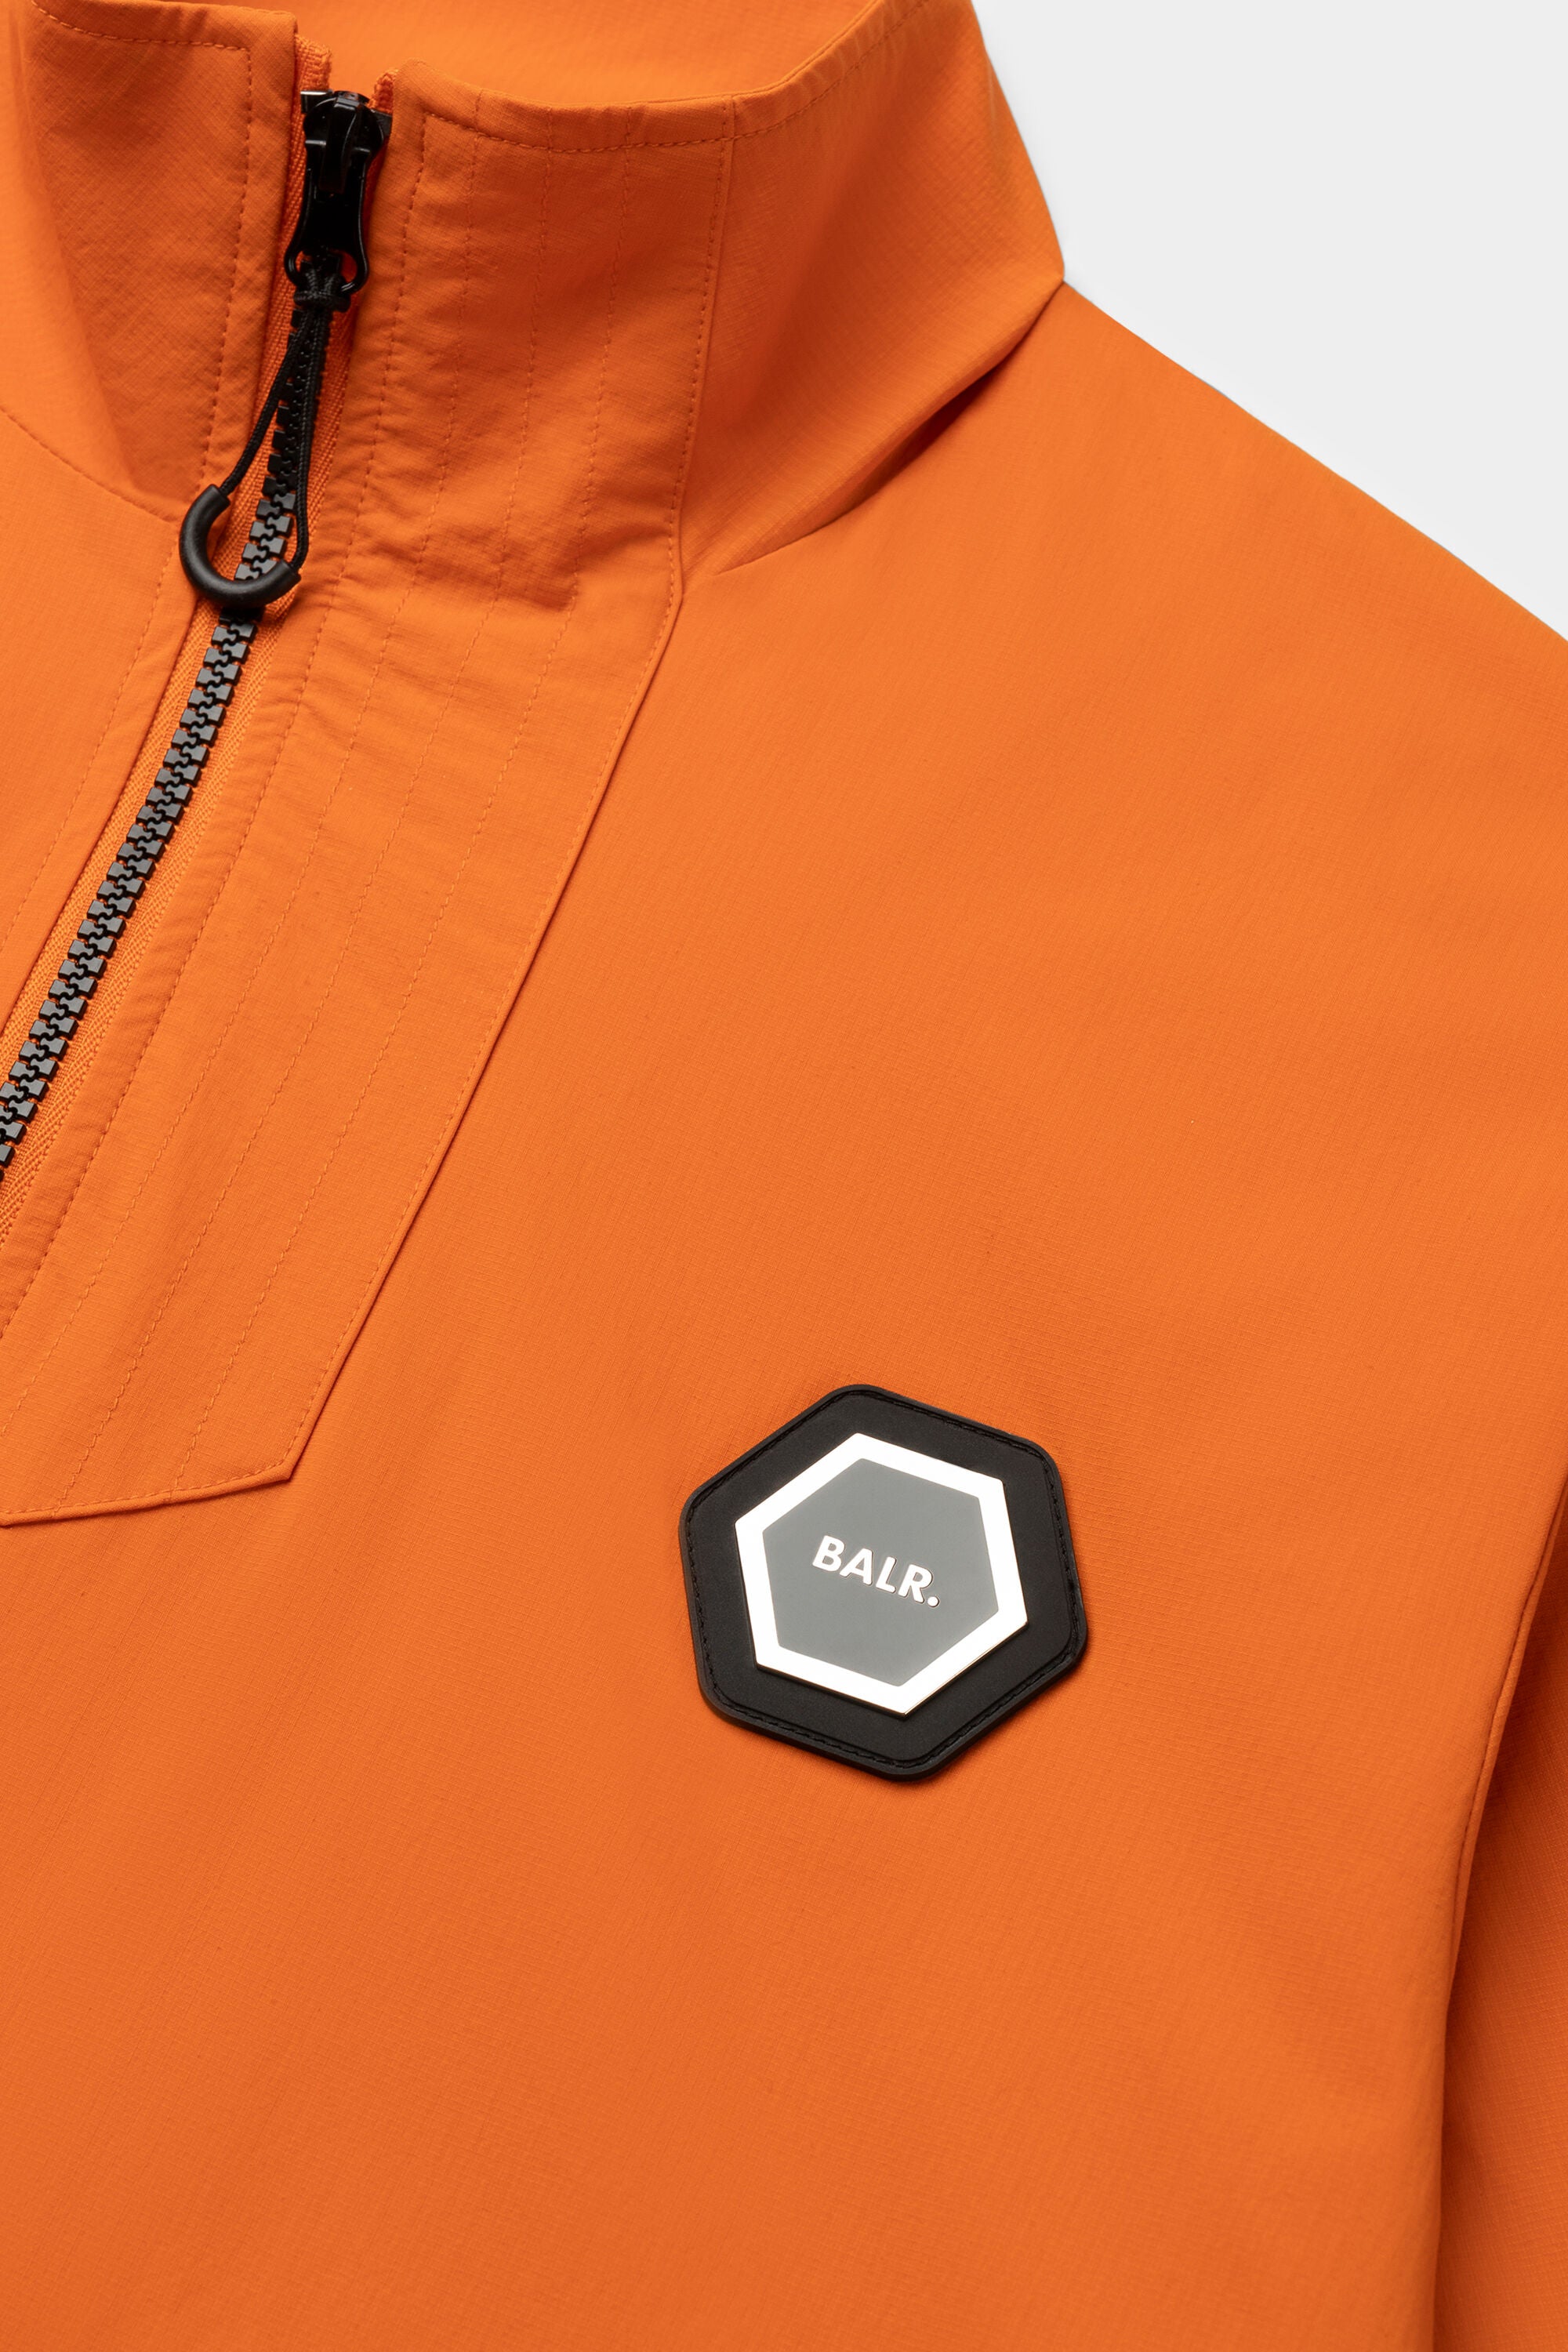 Hexline Slim Fit Track Jacket Orange